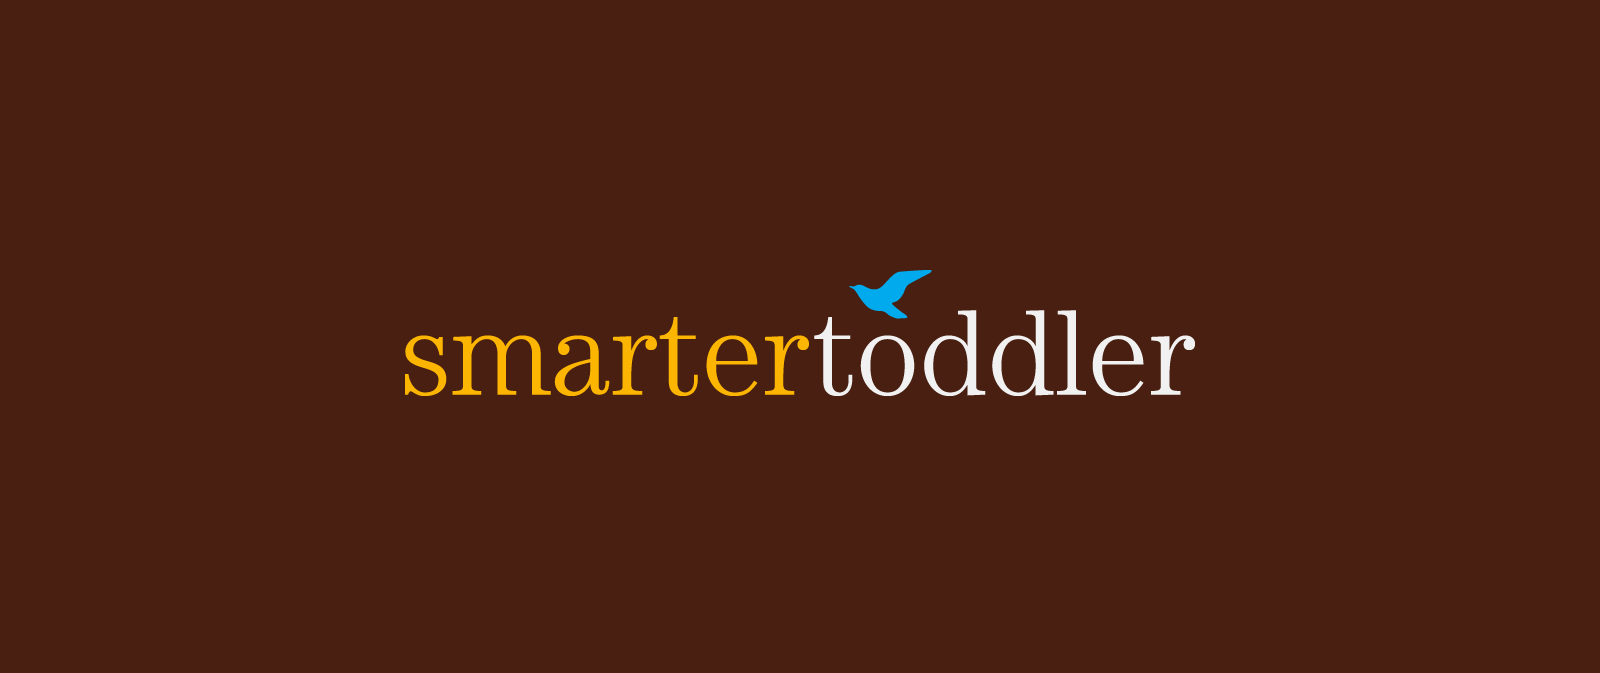 Brand Identity for Smarter Toddler